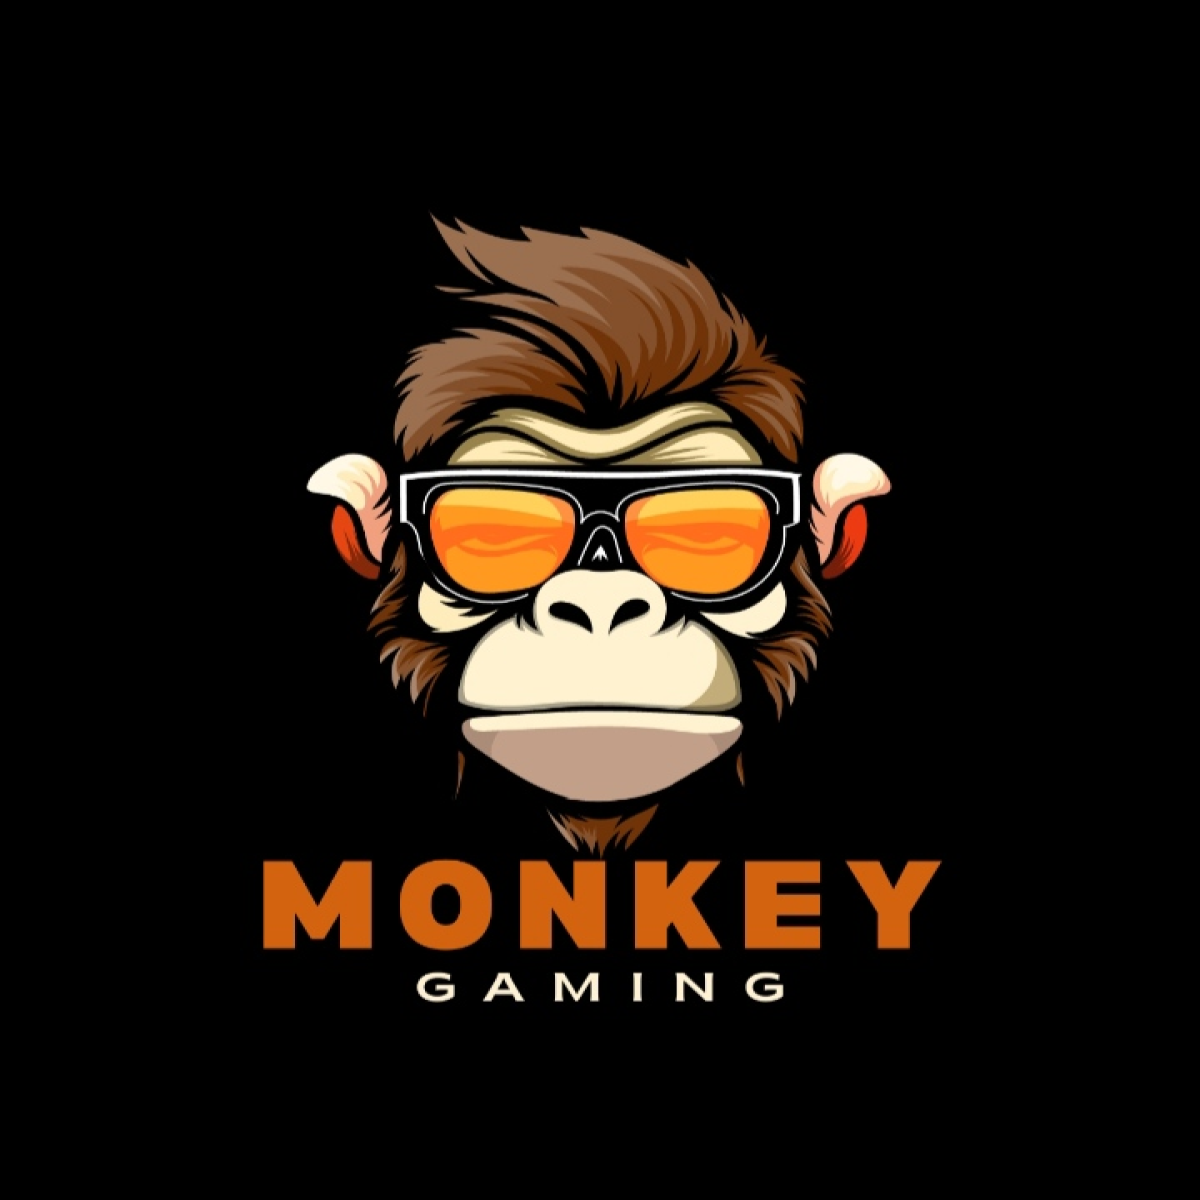 Monkey logo preview image.